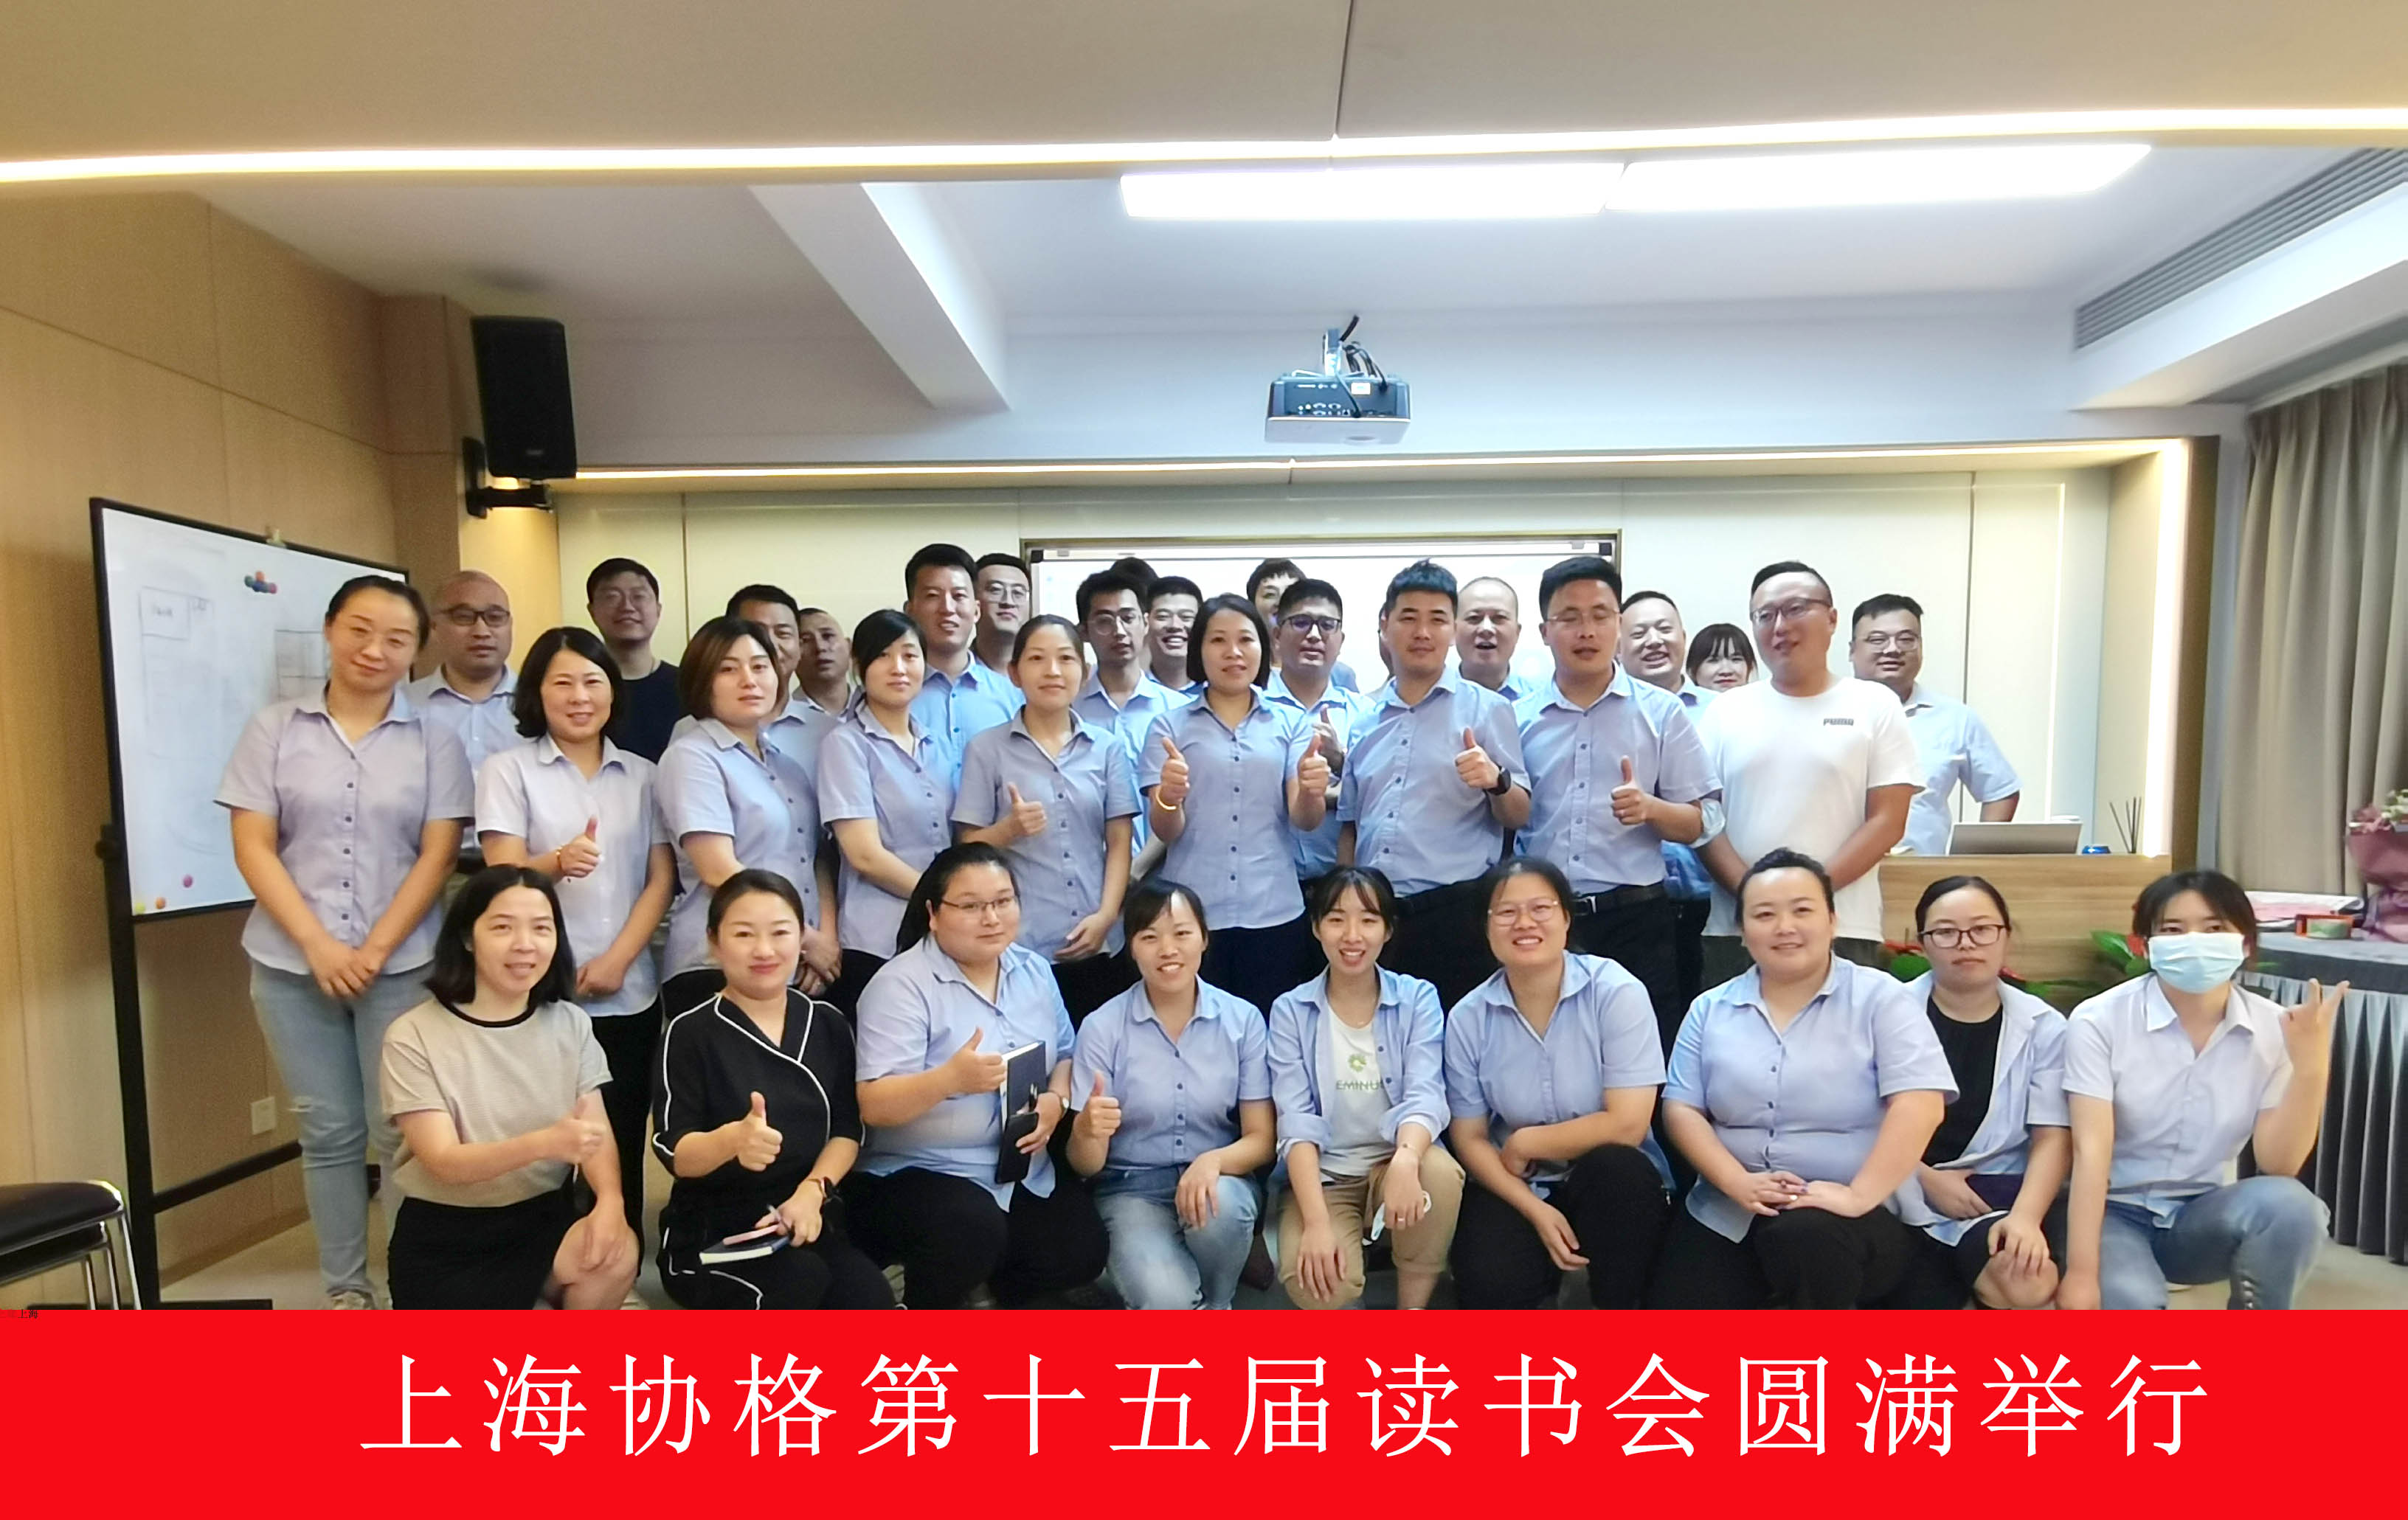 上海协格空调工程有限公司第十五届读书会合影